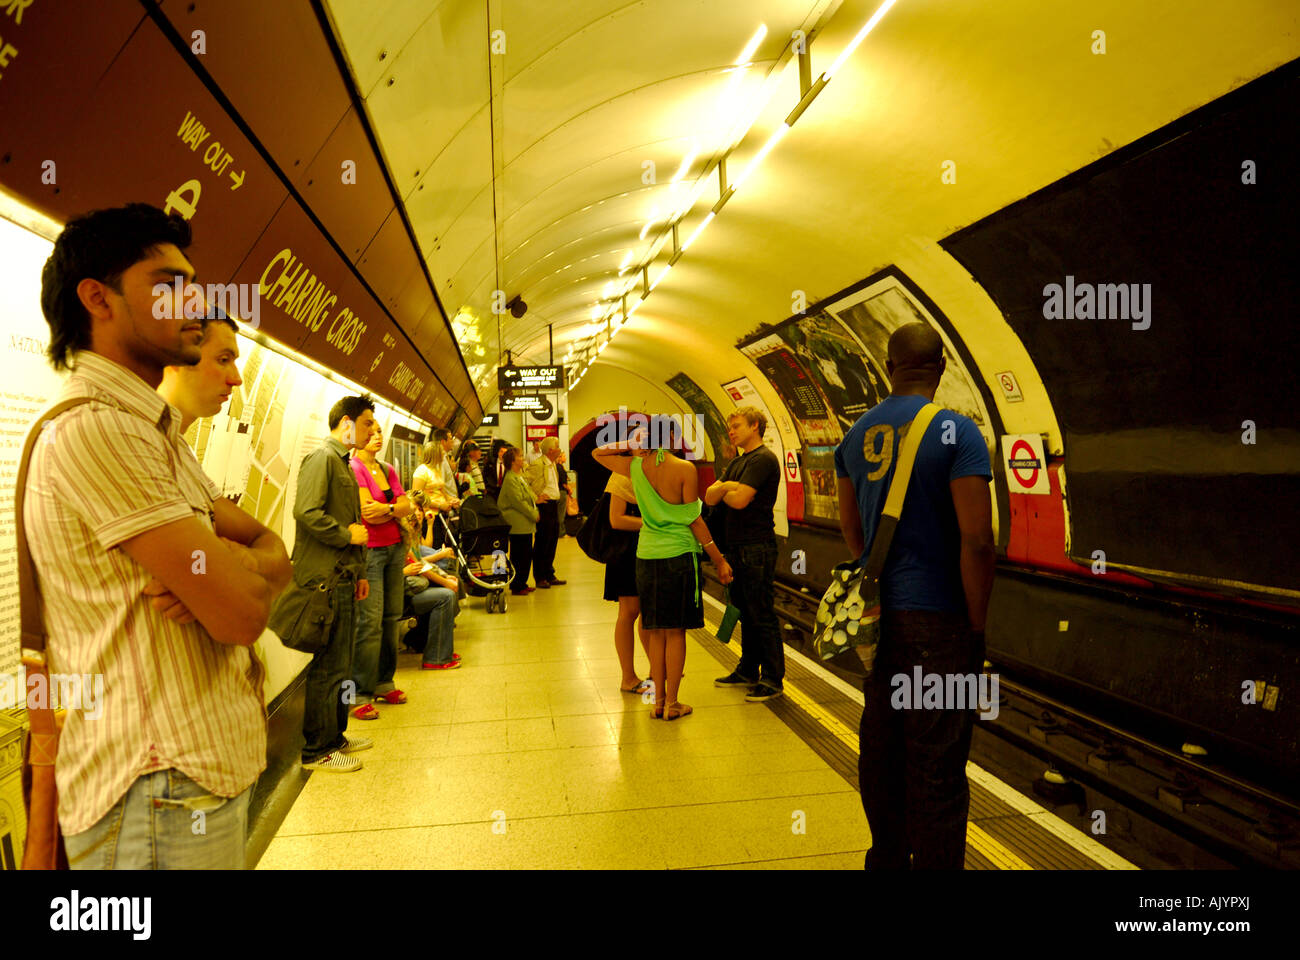 La station de métro Charing Cross, Londres, Royaume-Uni. Banque D'Images